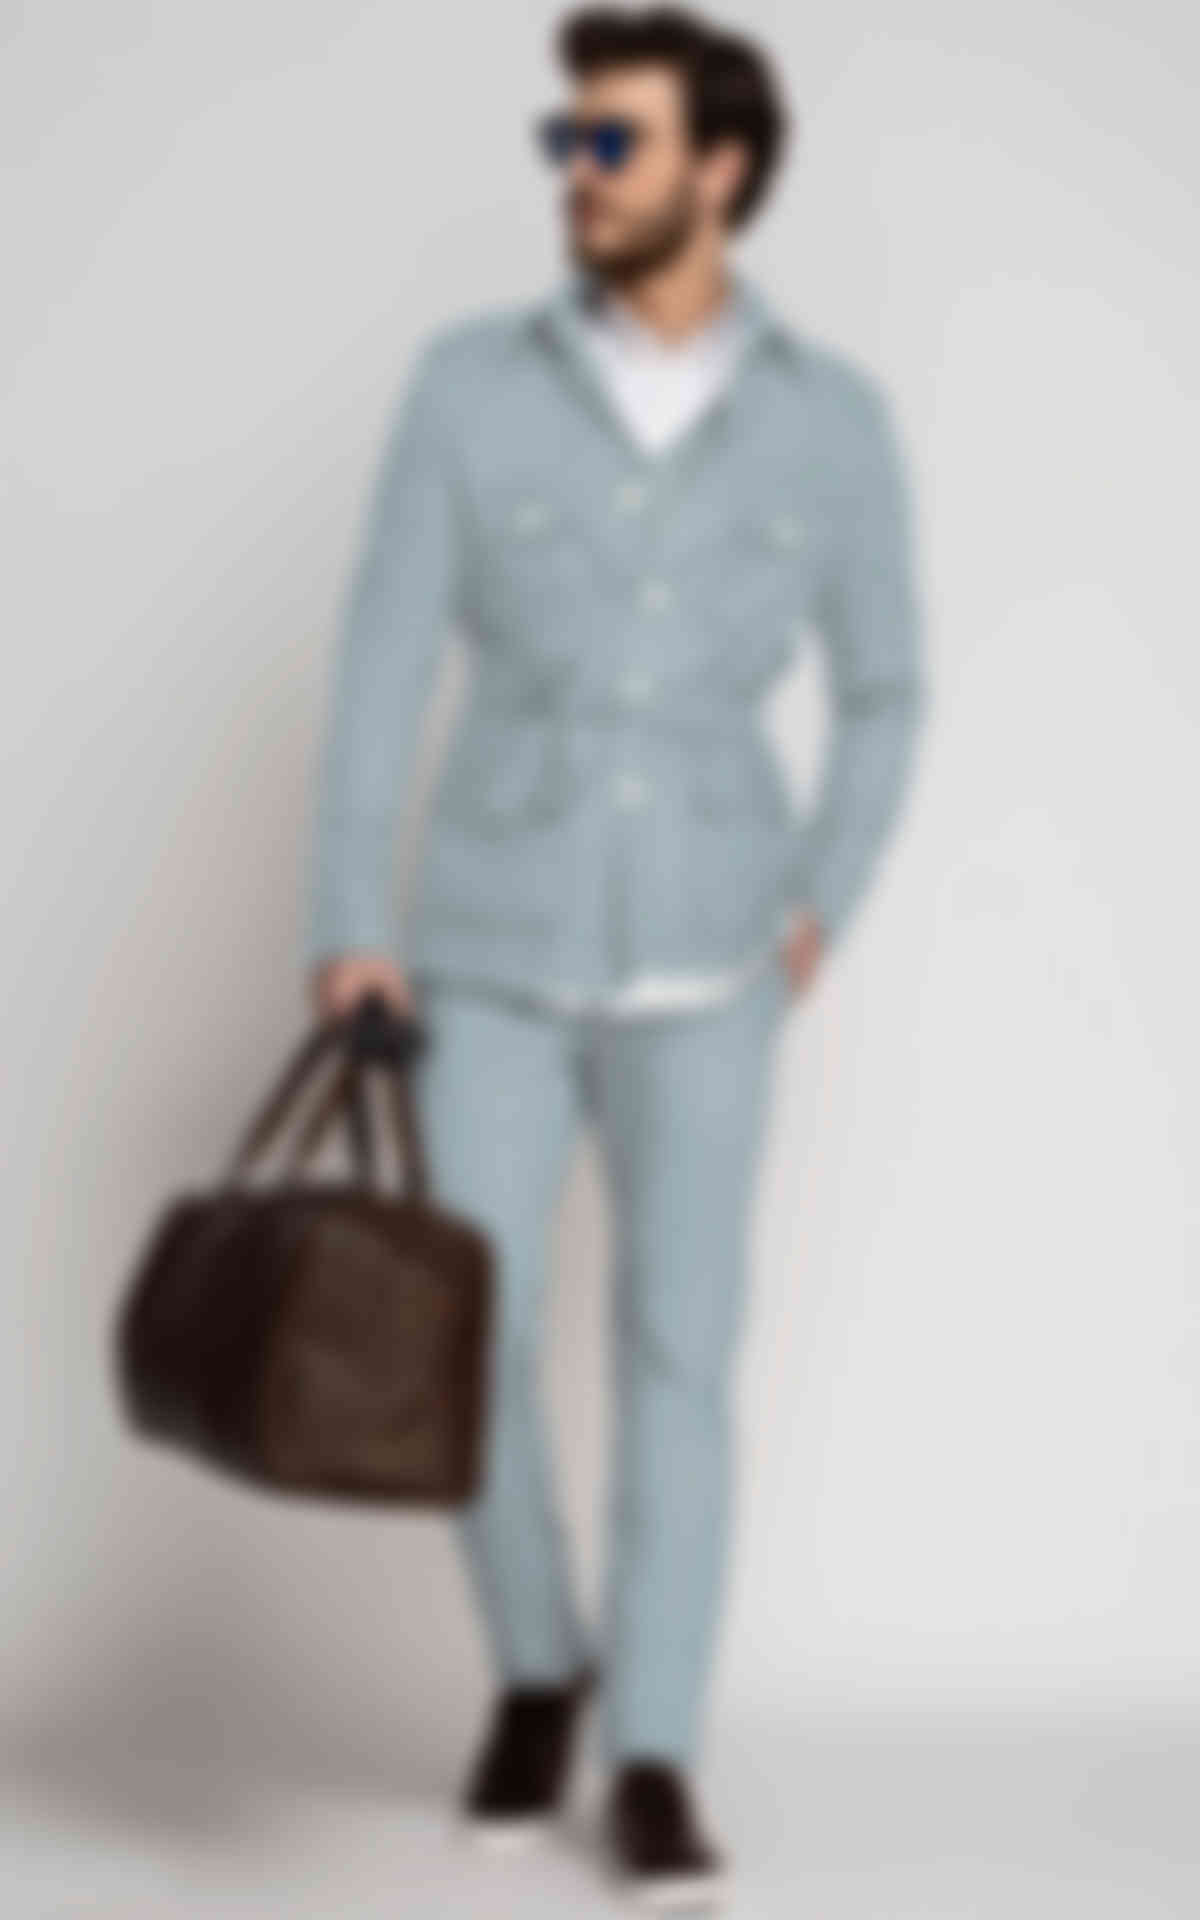 Bluish Grey Military Suit